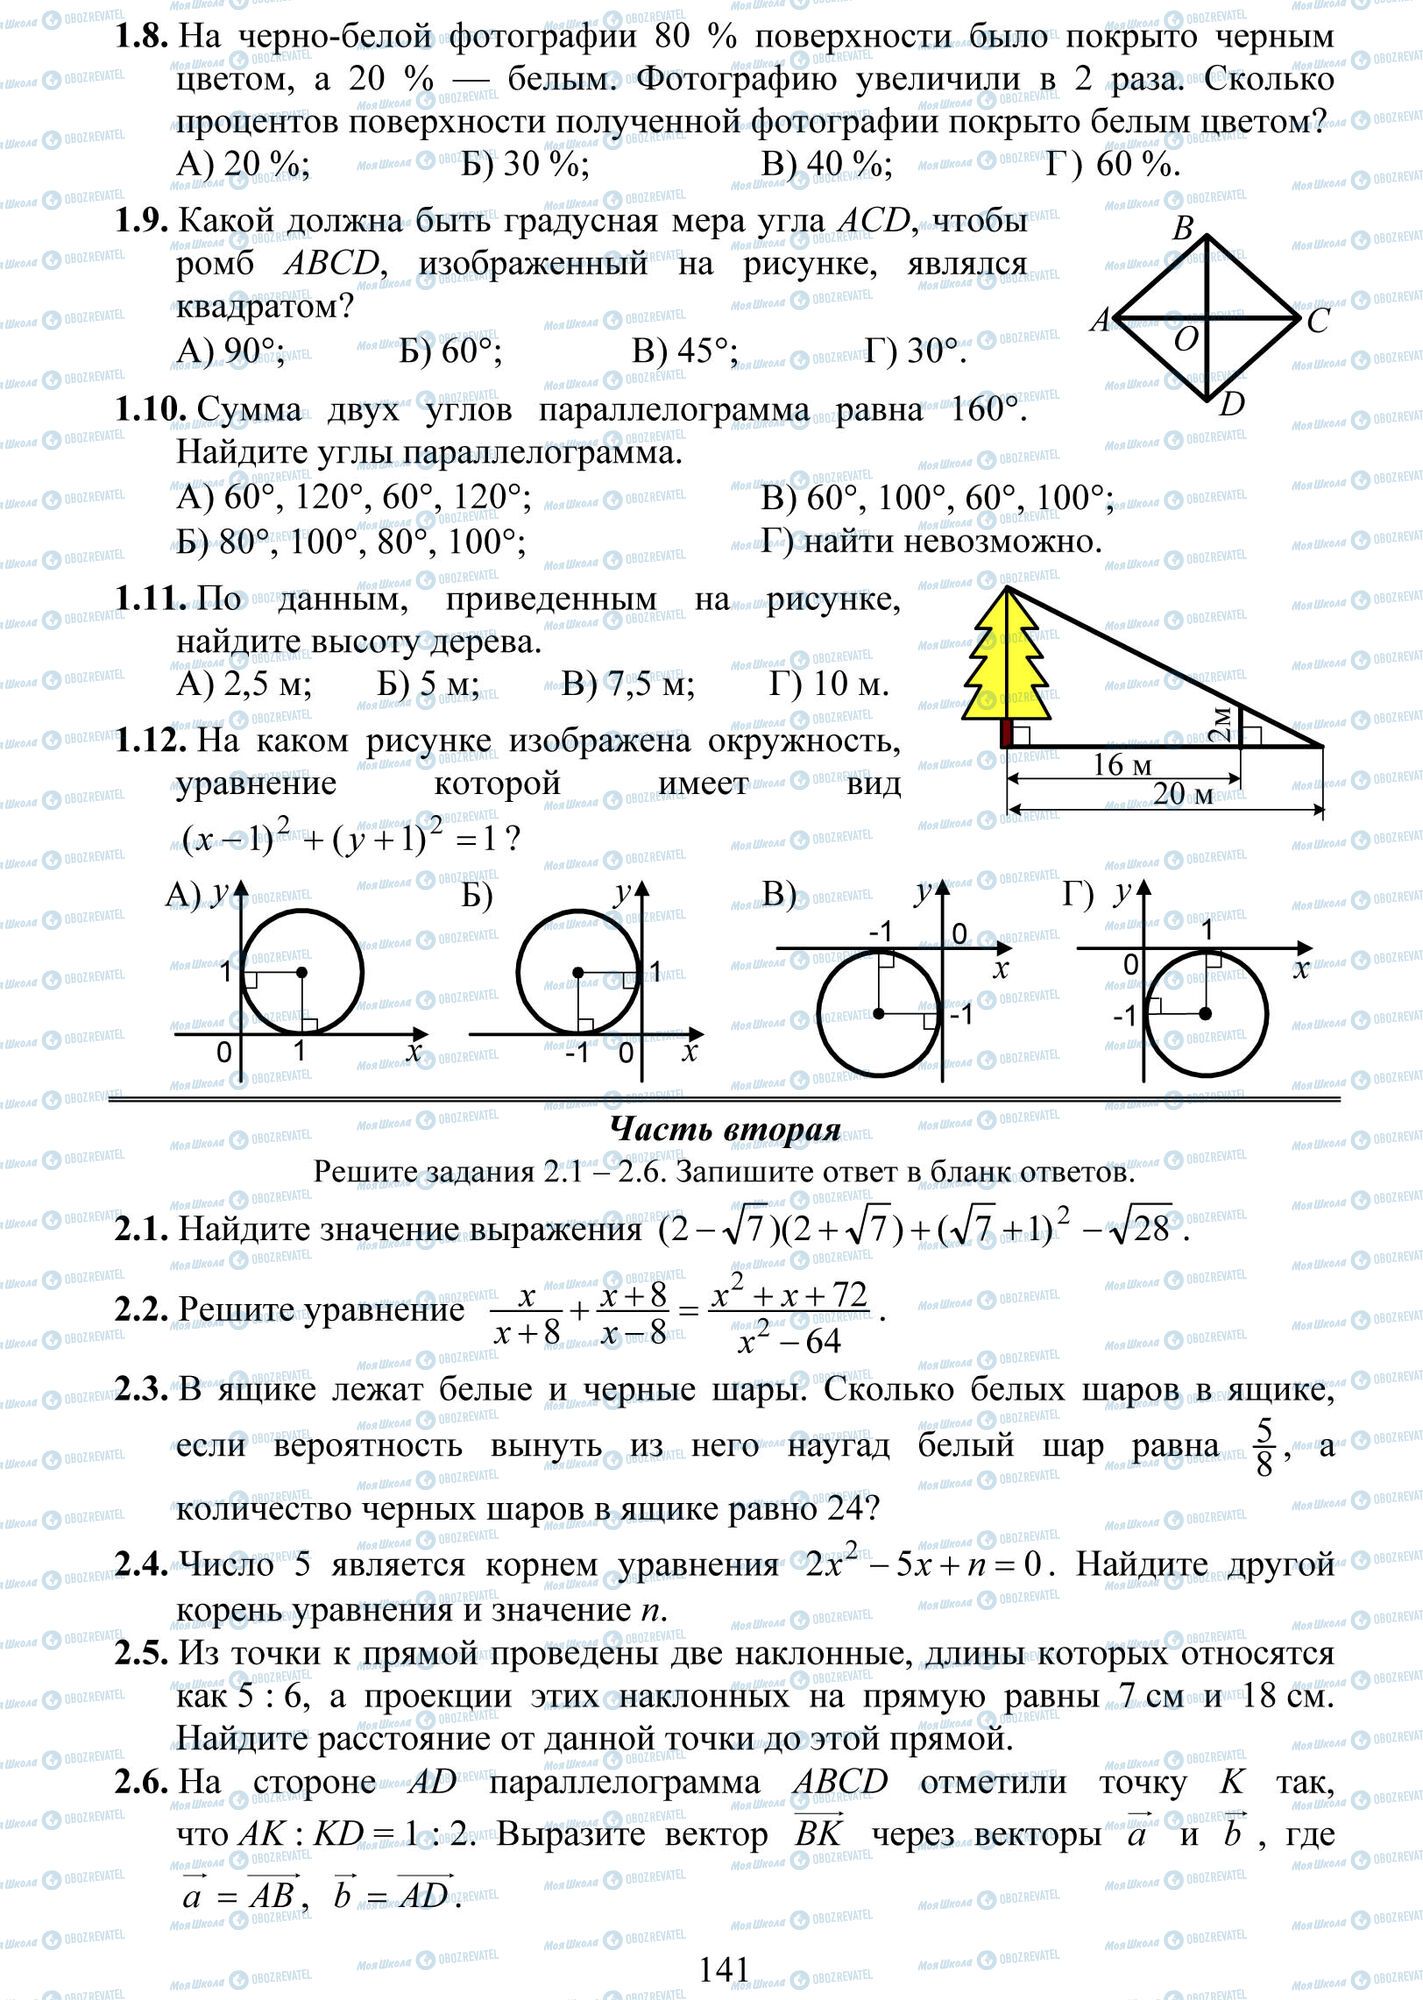 ДПА Математика 9 класс страница 8-12